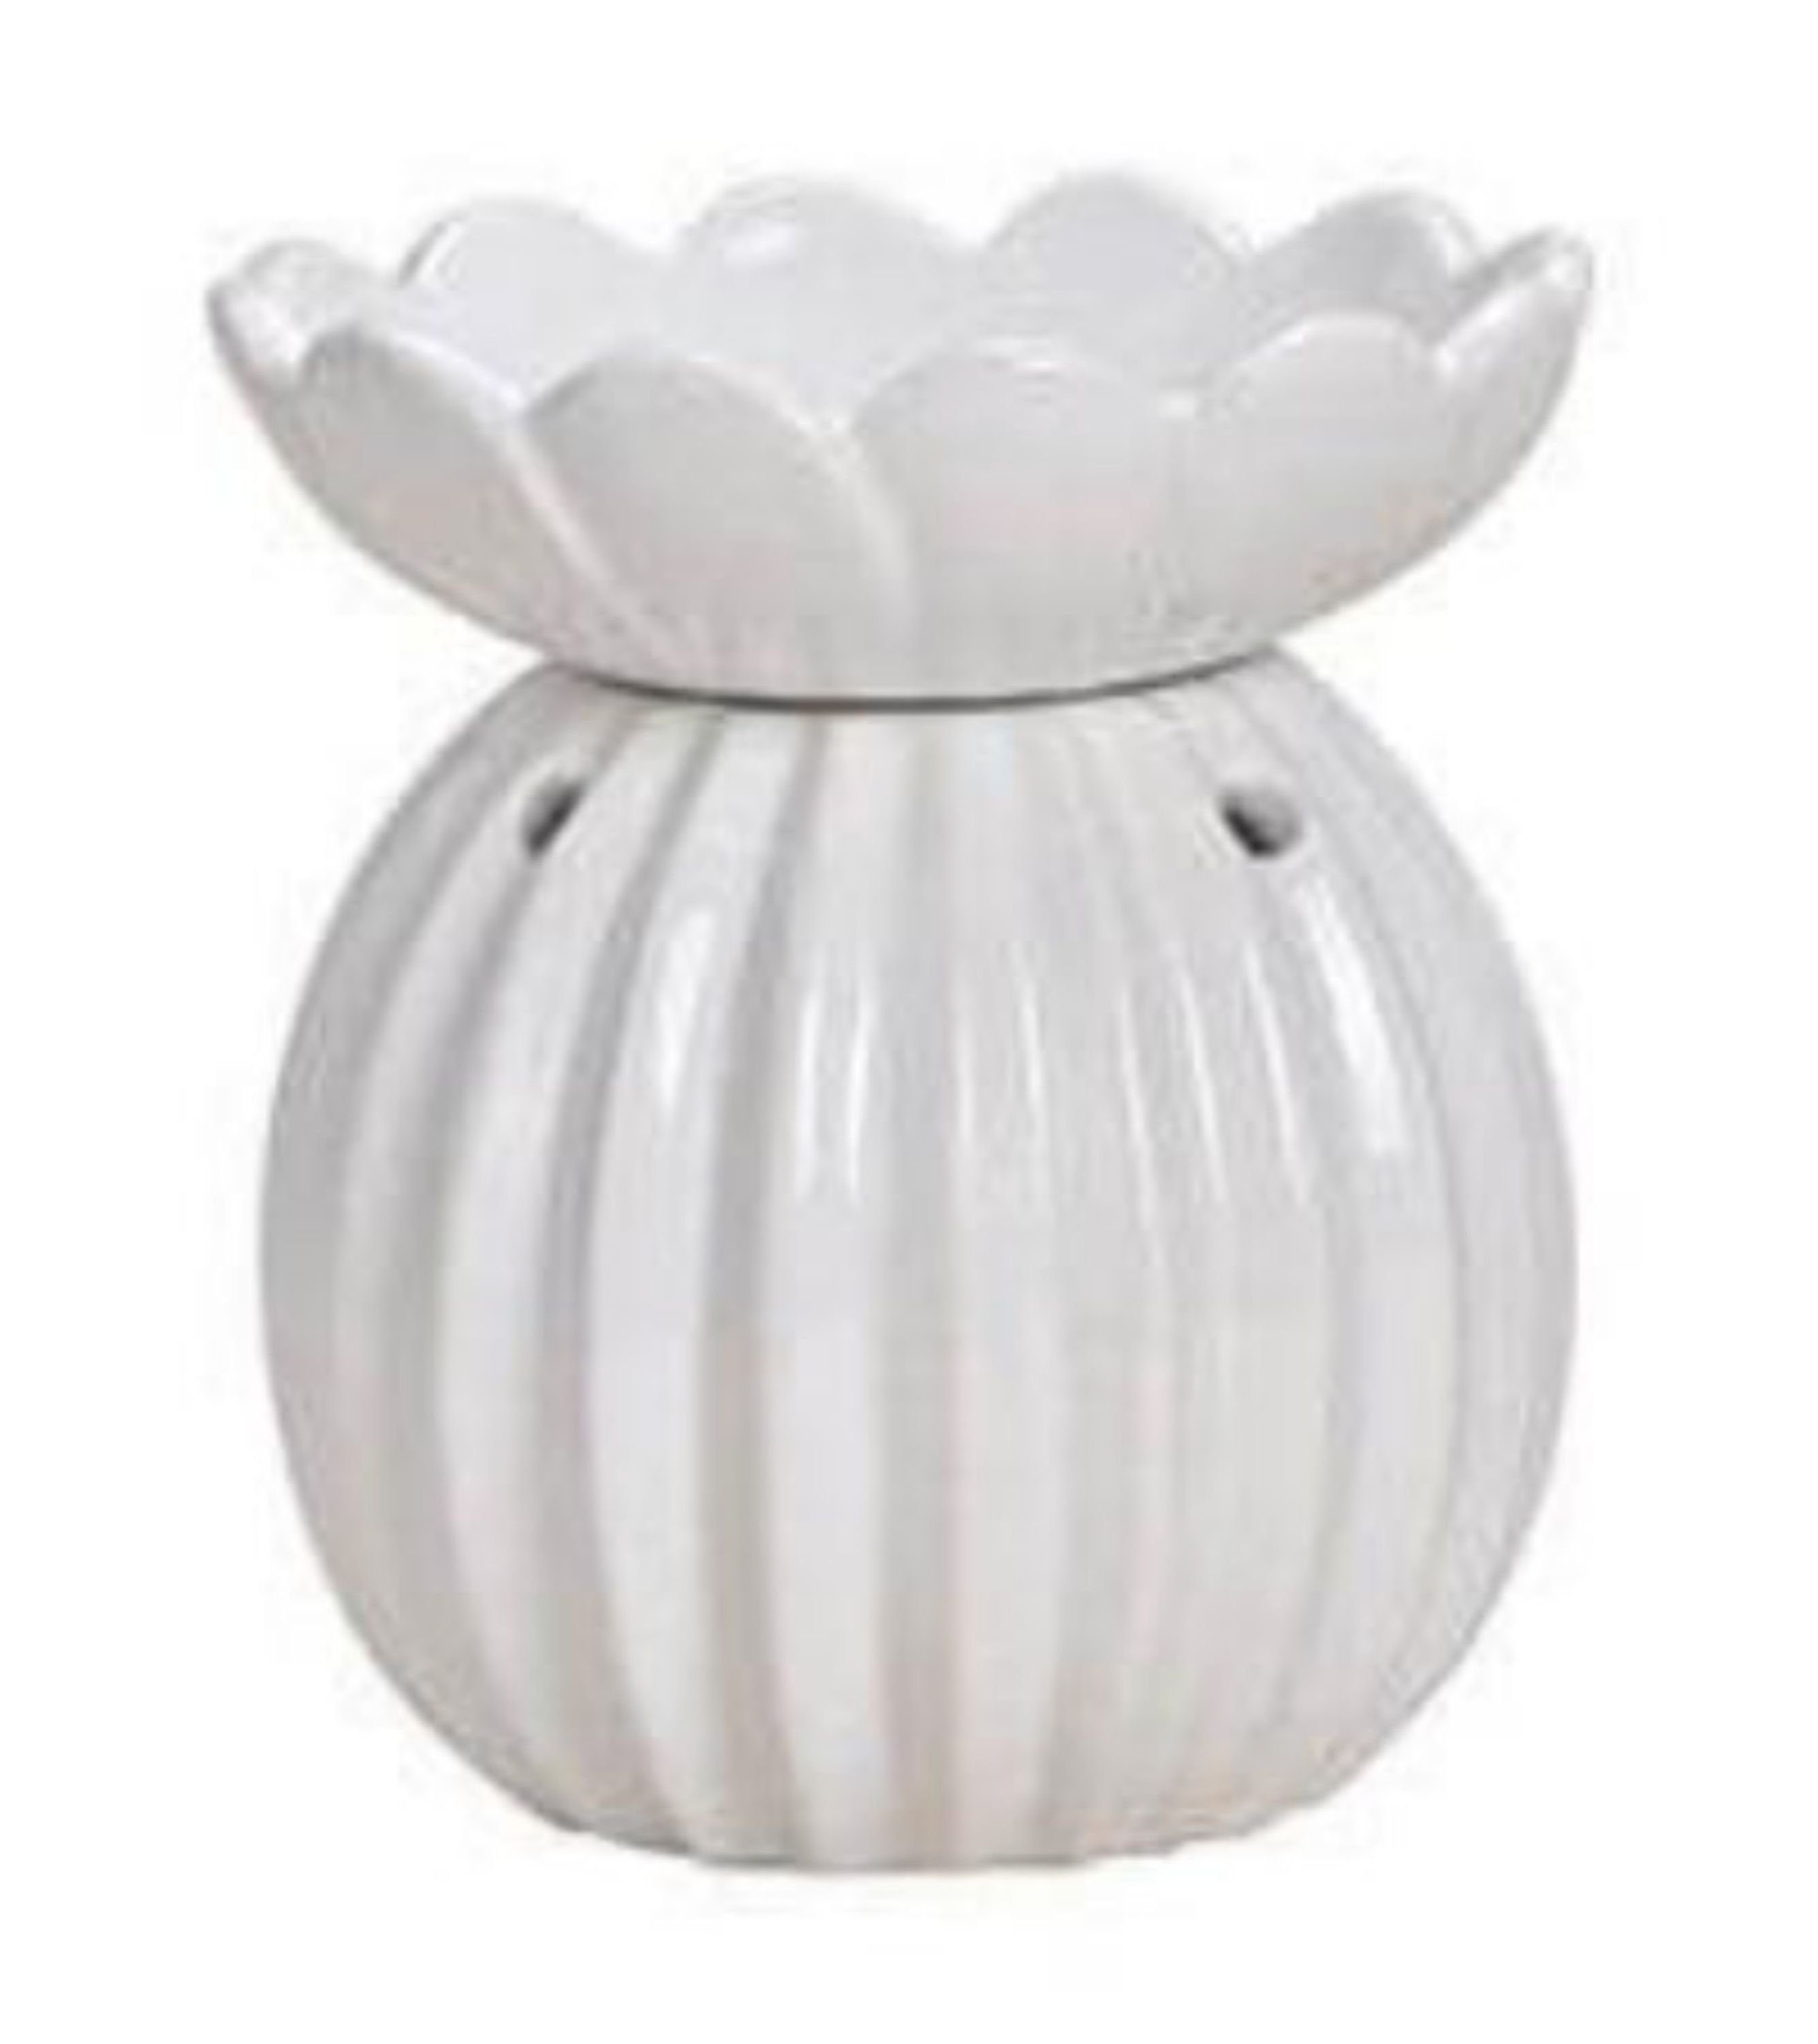 G. Wurm Kerzenhalter, Duftlampe Kugel aus Keramik, weiß, für Teelichter,  Ausführung mit abnehmbarer Duftschale, ideal für Duft- Öle und Wachse,  Maße: Länge x Tiefe x Höhe = 13 x 13 x 15